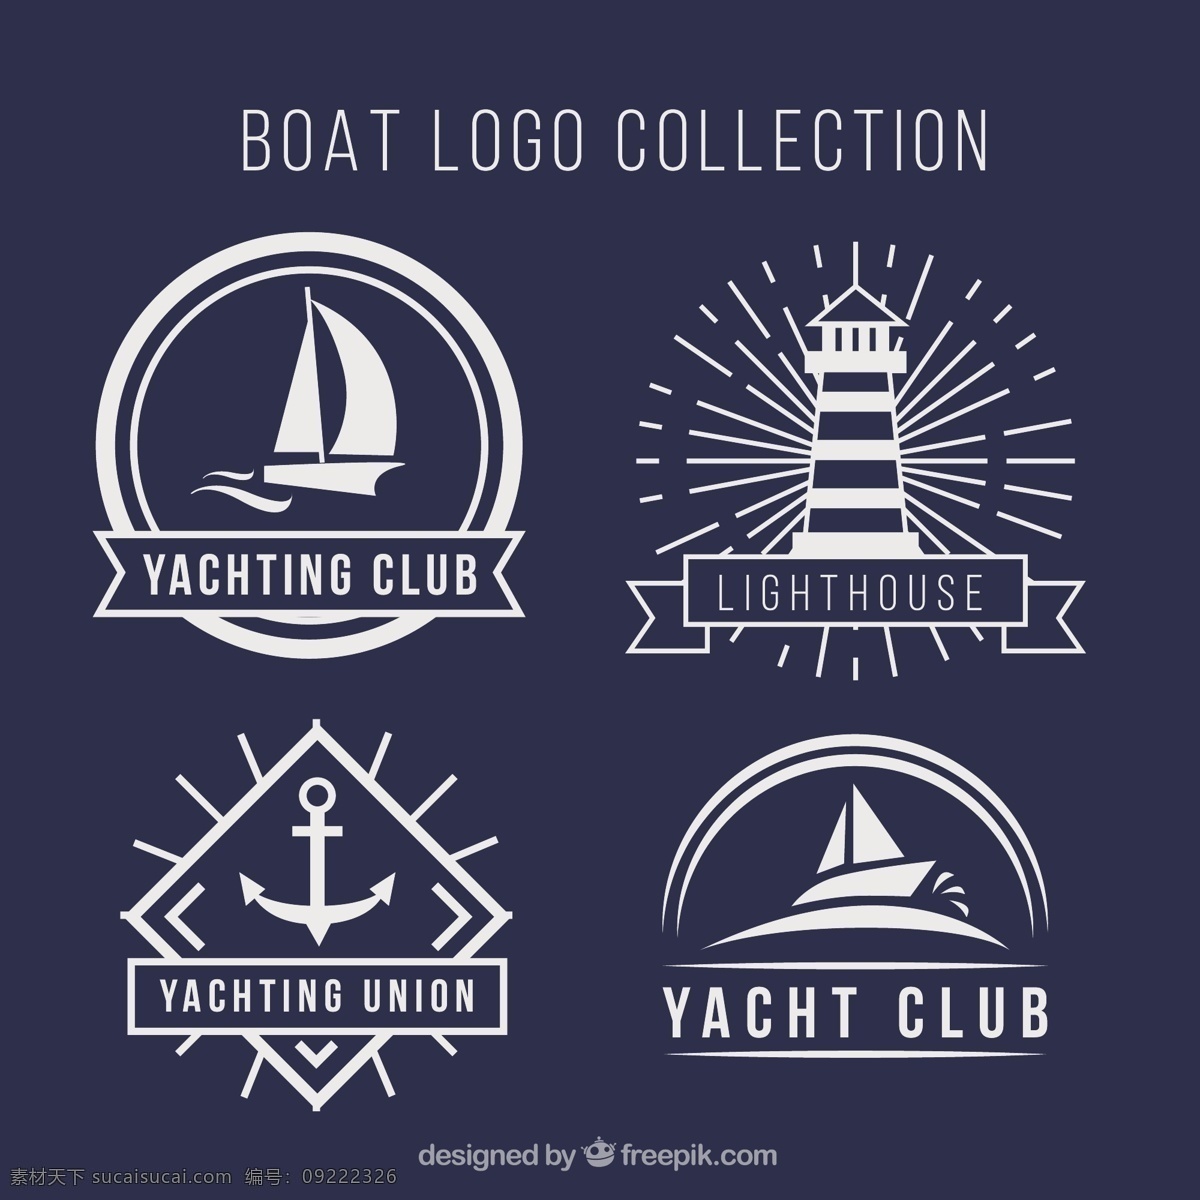 平面设计 中 四 种 船 标 选择 标志 商业 线 标签 标识 扁平 企业 船舶 公司 企业形象 品牌 现代 运输 锚 航海 符号 身份